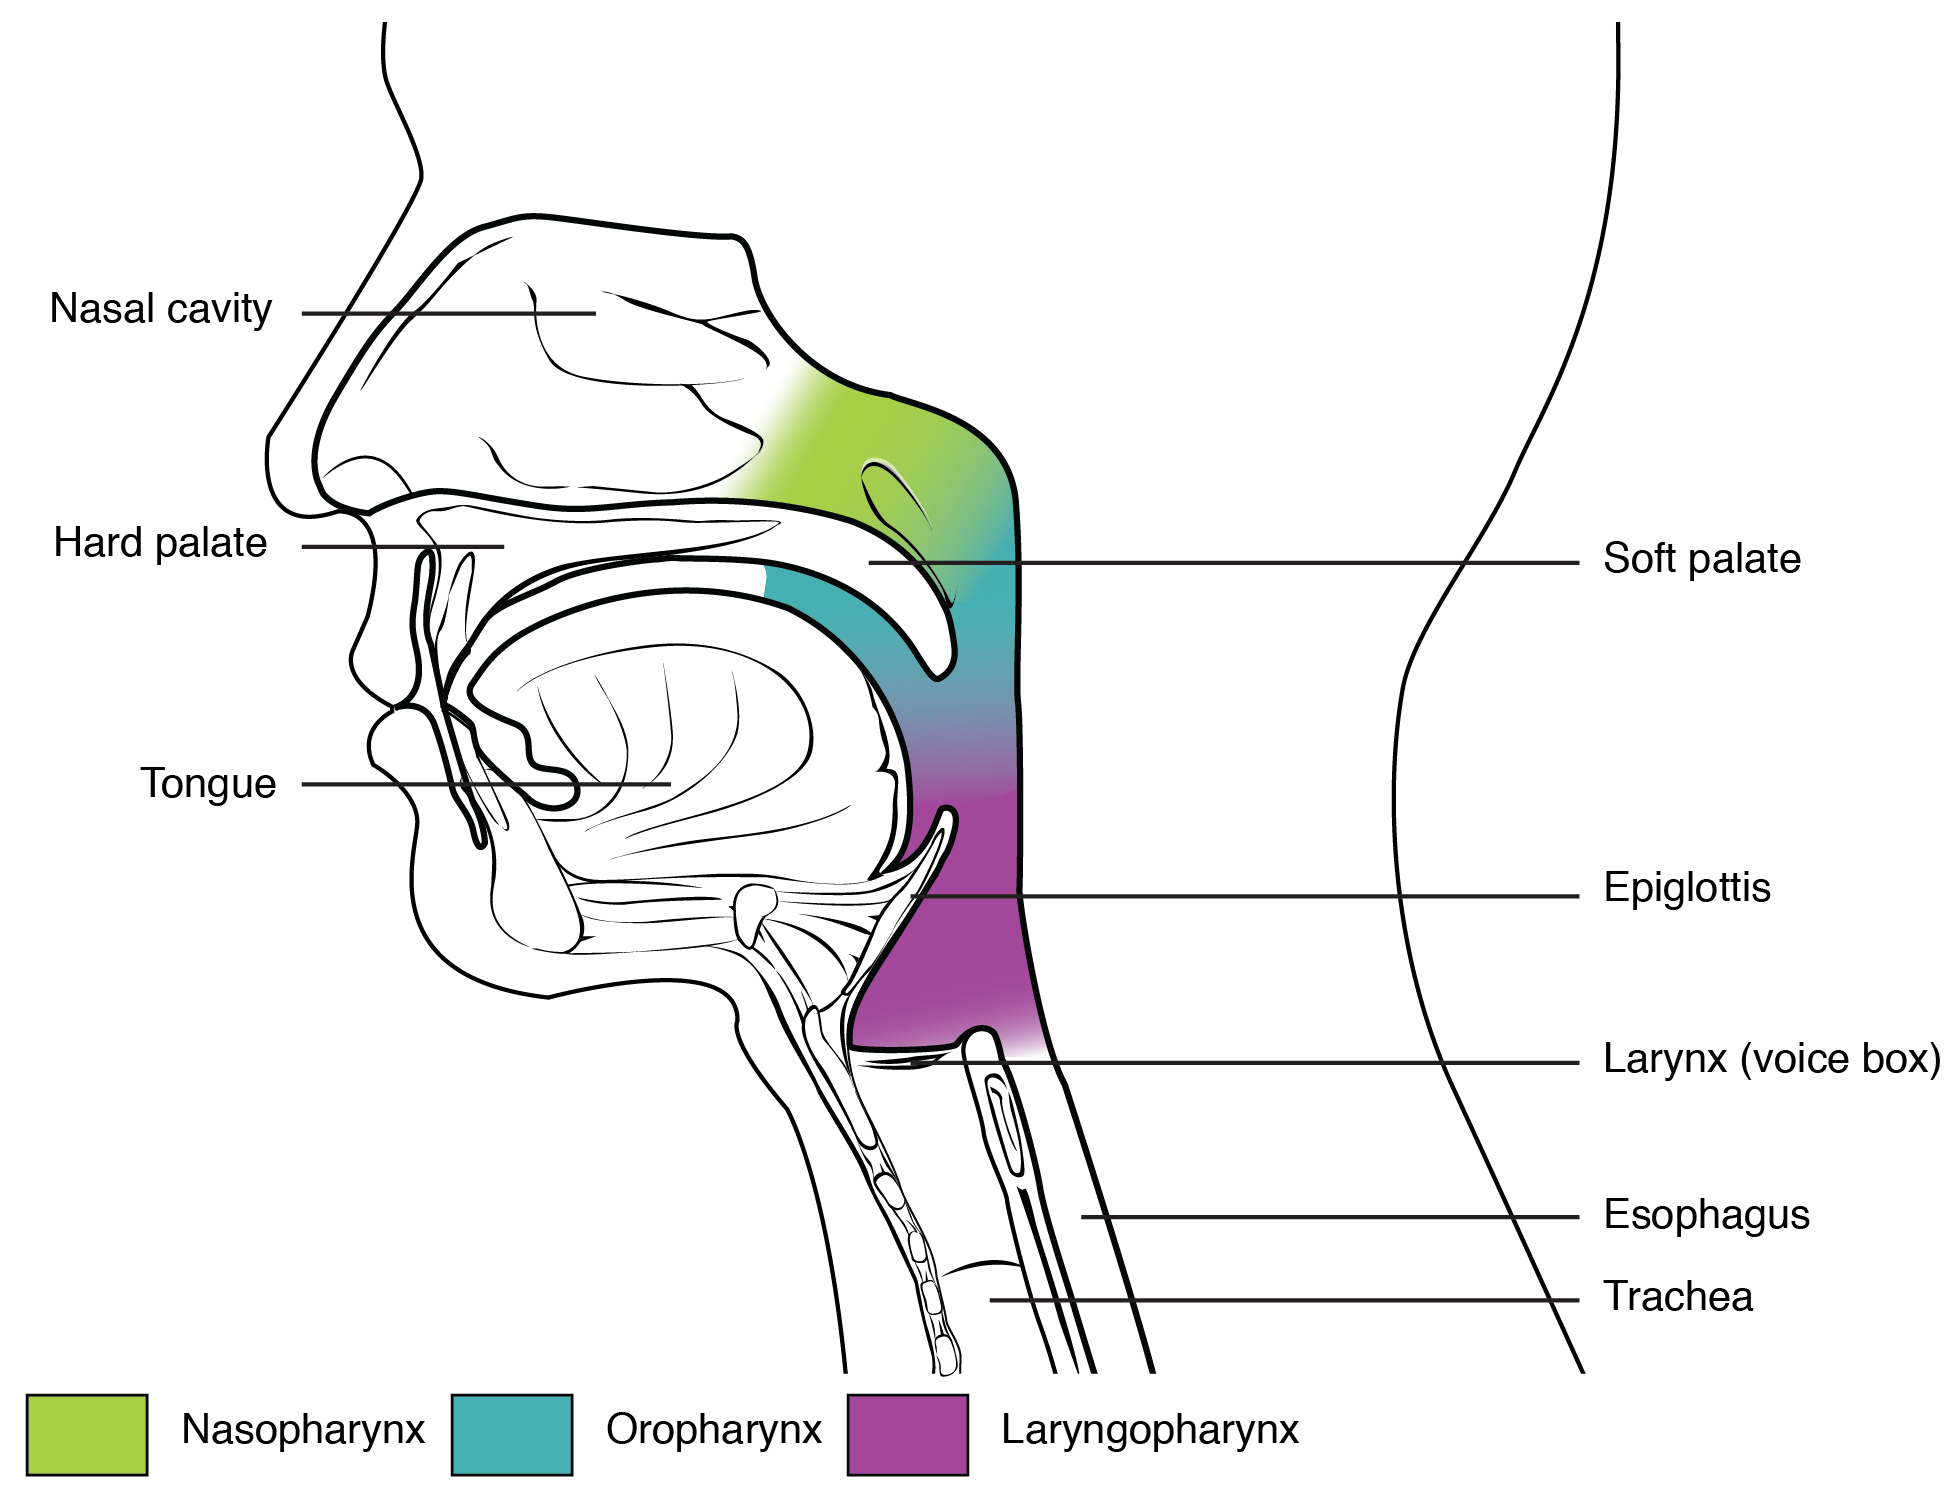 The pharynx is divided into the nasopharynx, oropharynx, and laryngopharynx.